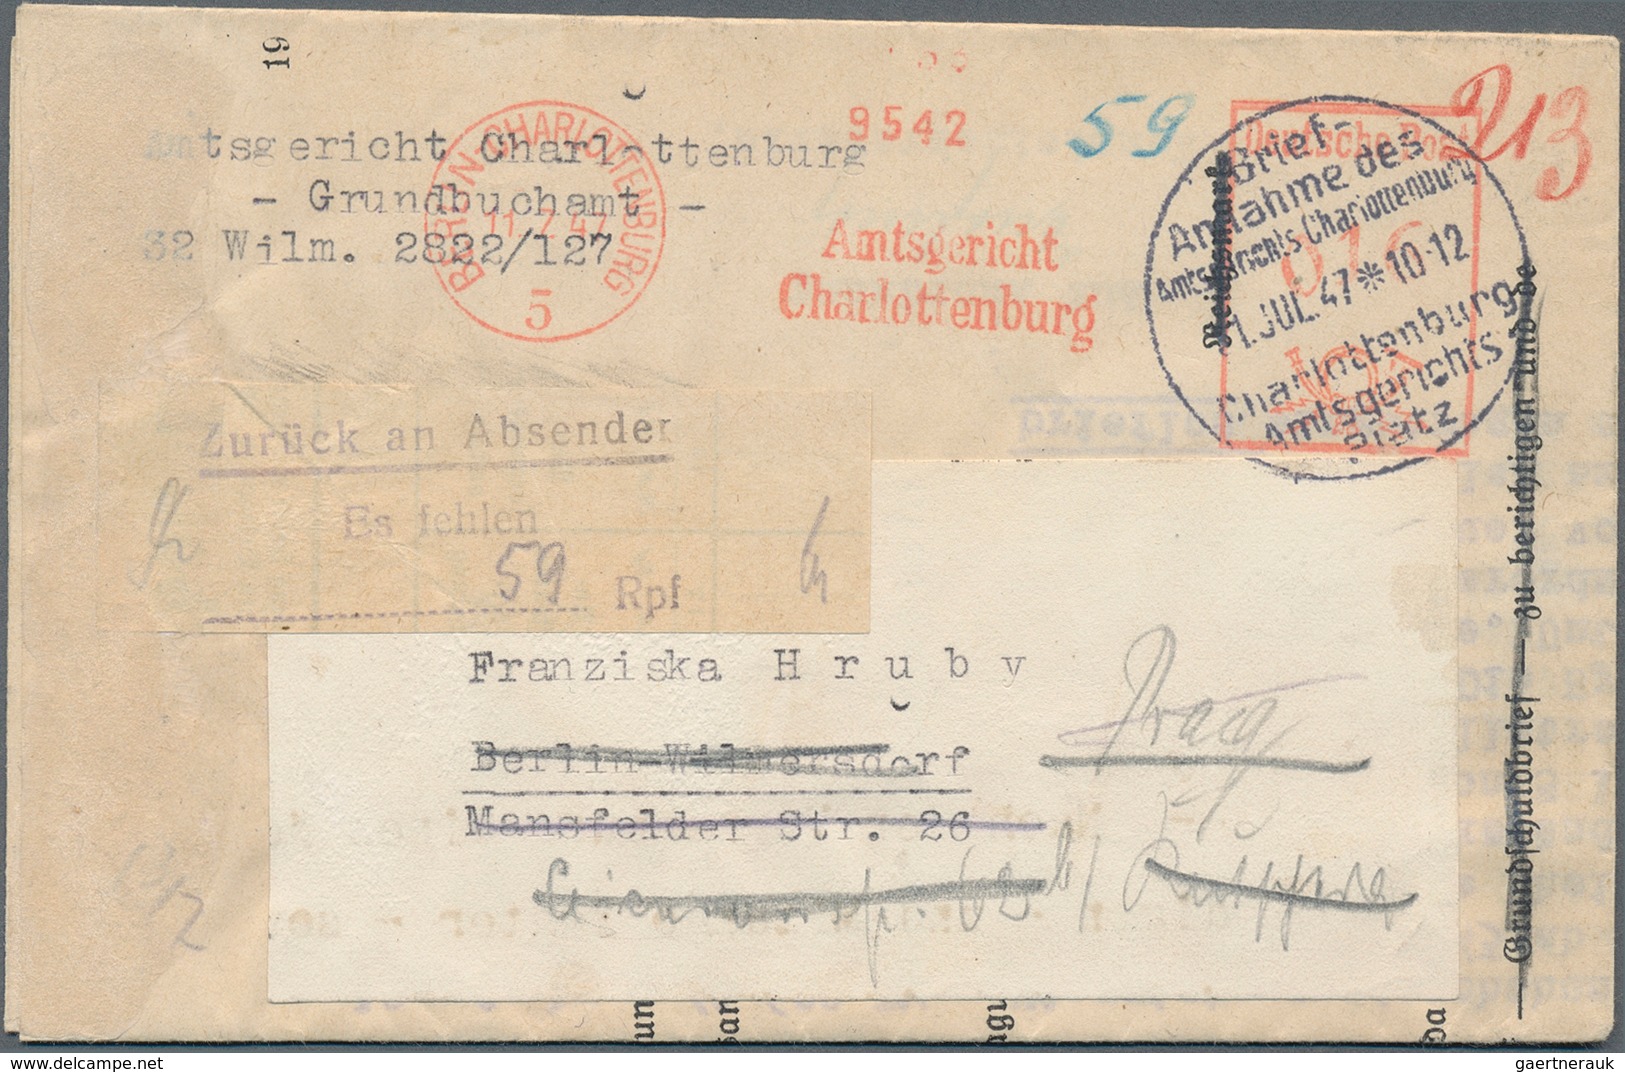 Deutschland nach 1945: 1945-1982, Besonderheiten, Partie mit rund 250 Briefen und Belegen, dabei Nac